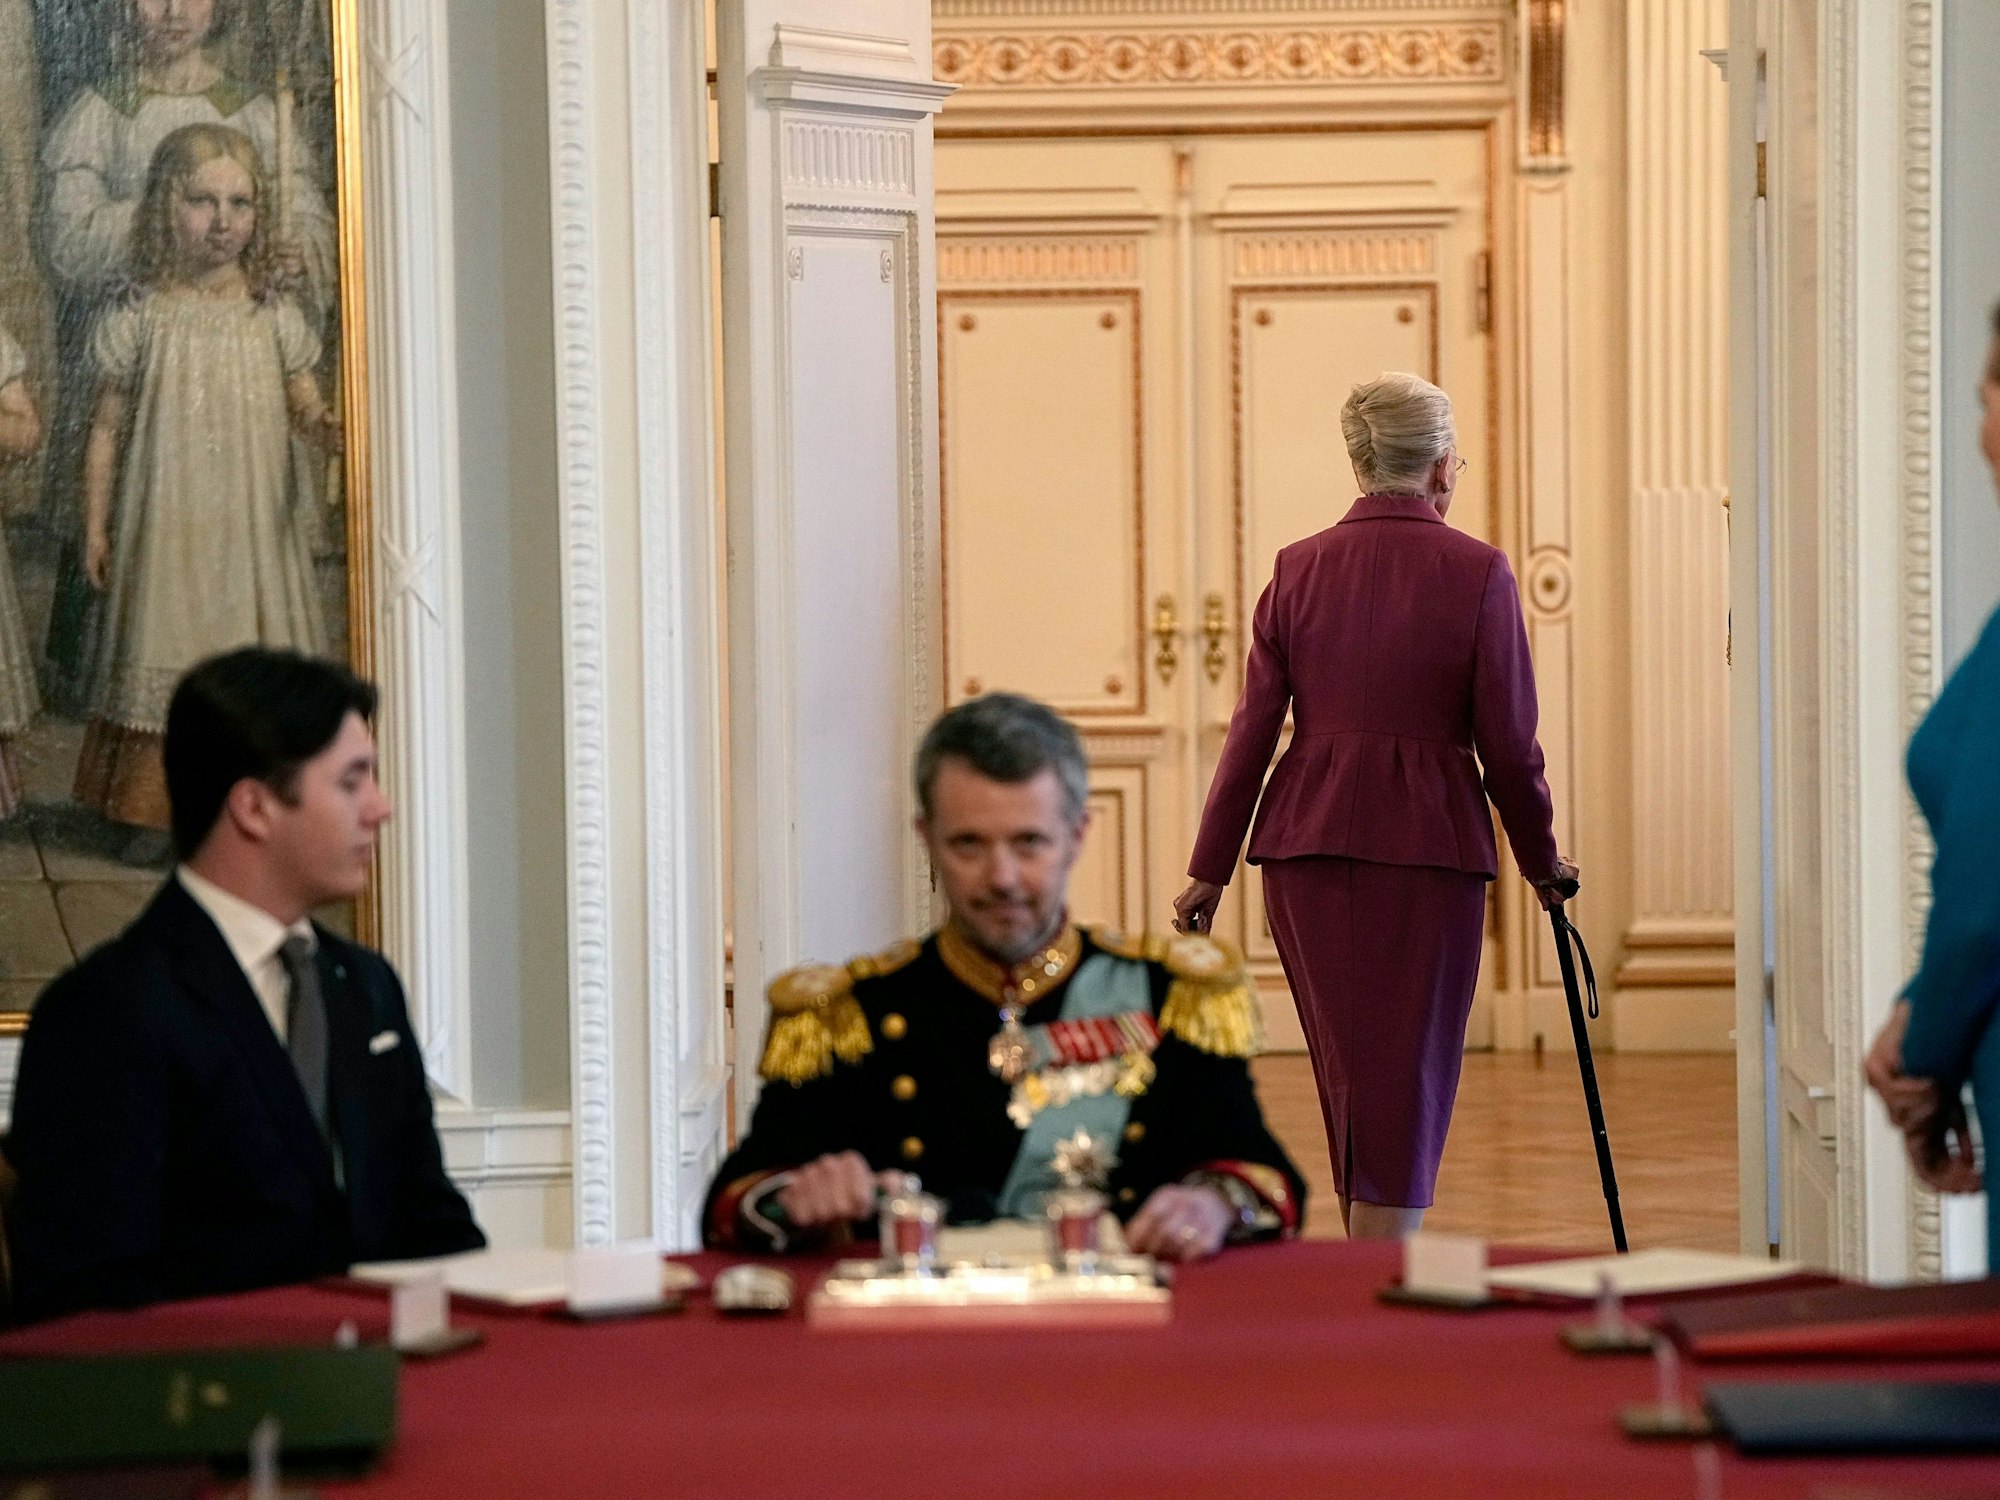 Königin Margrethe II. verlässt die Sitzung des Staatsrates nach der Unterzeichnung der Abdankungserklärung.